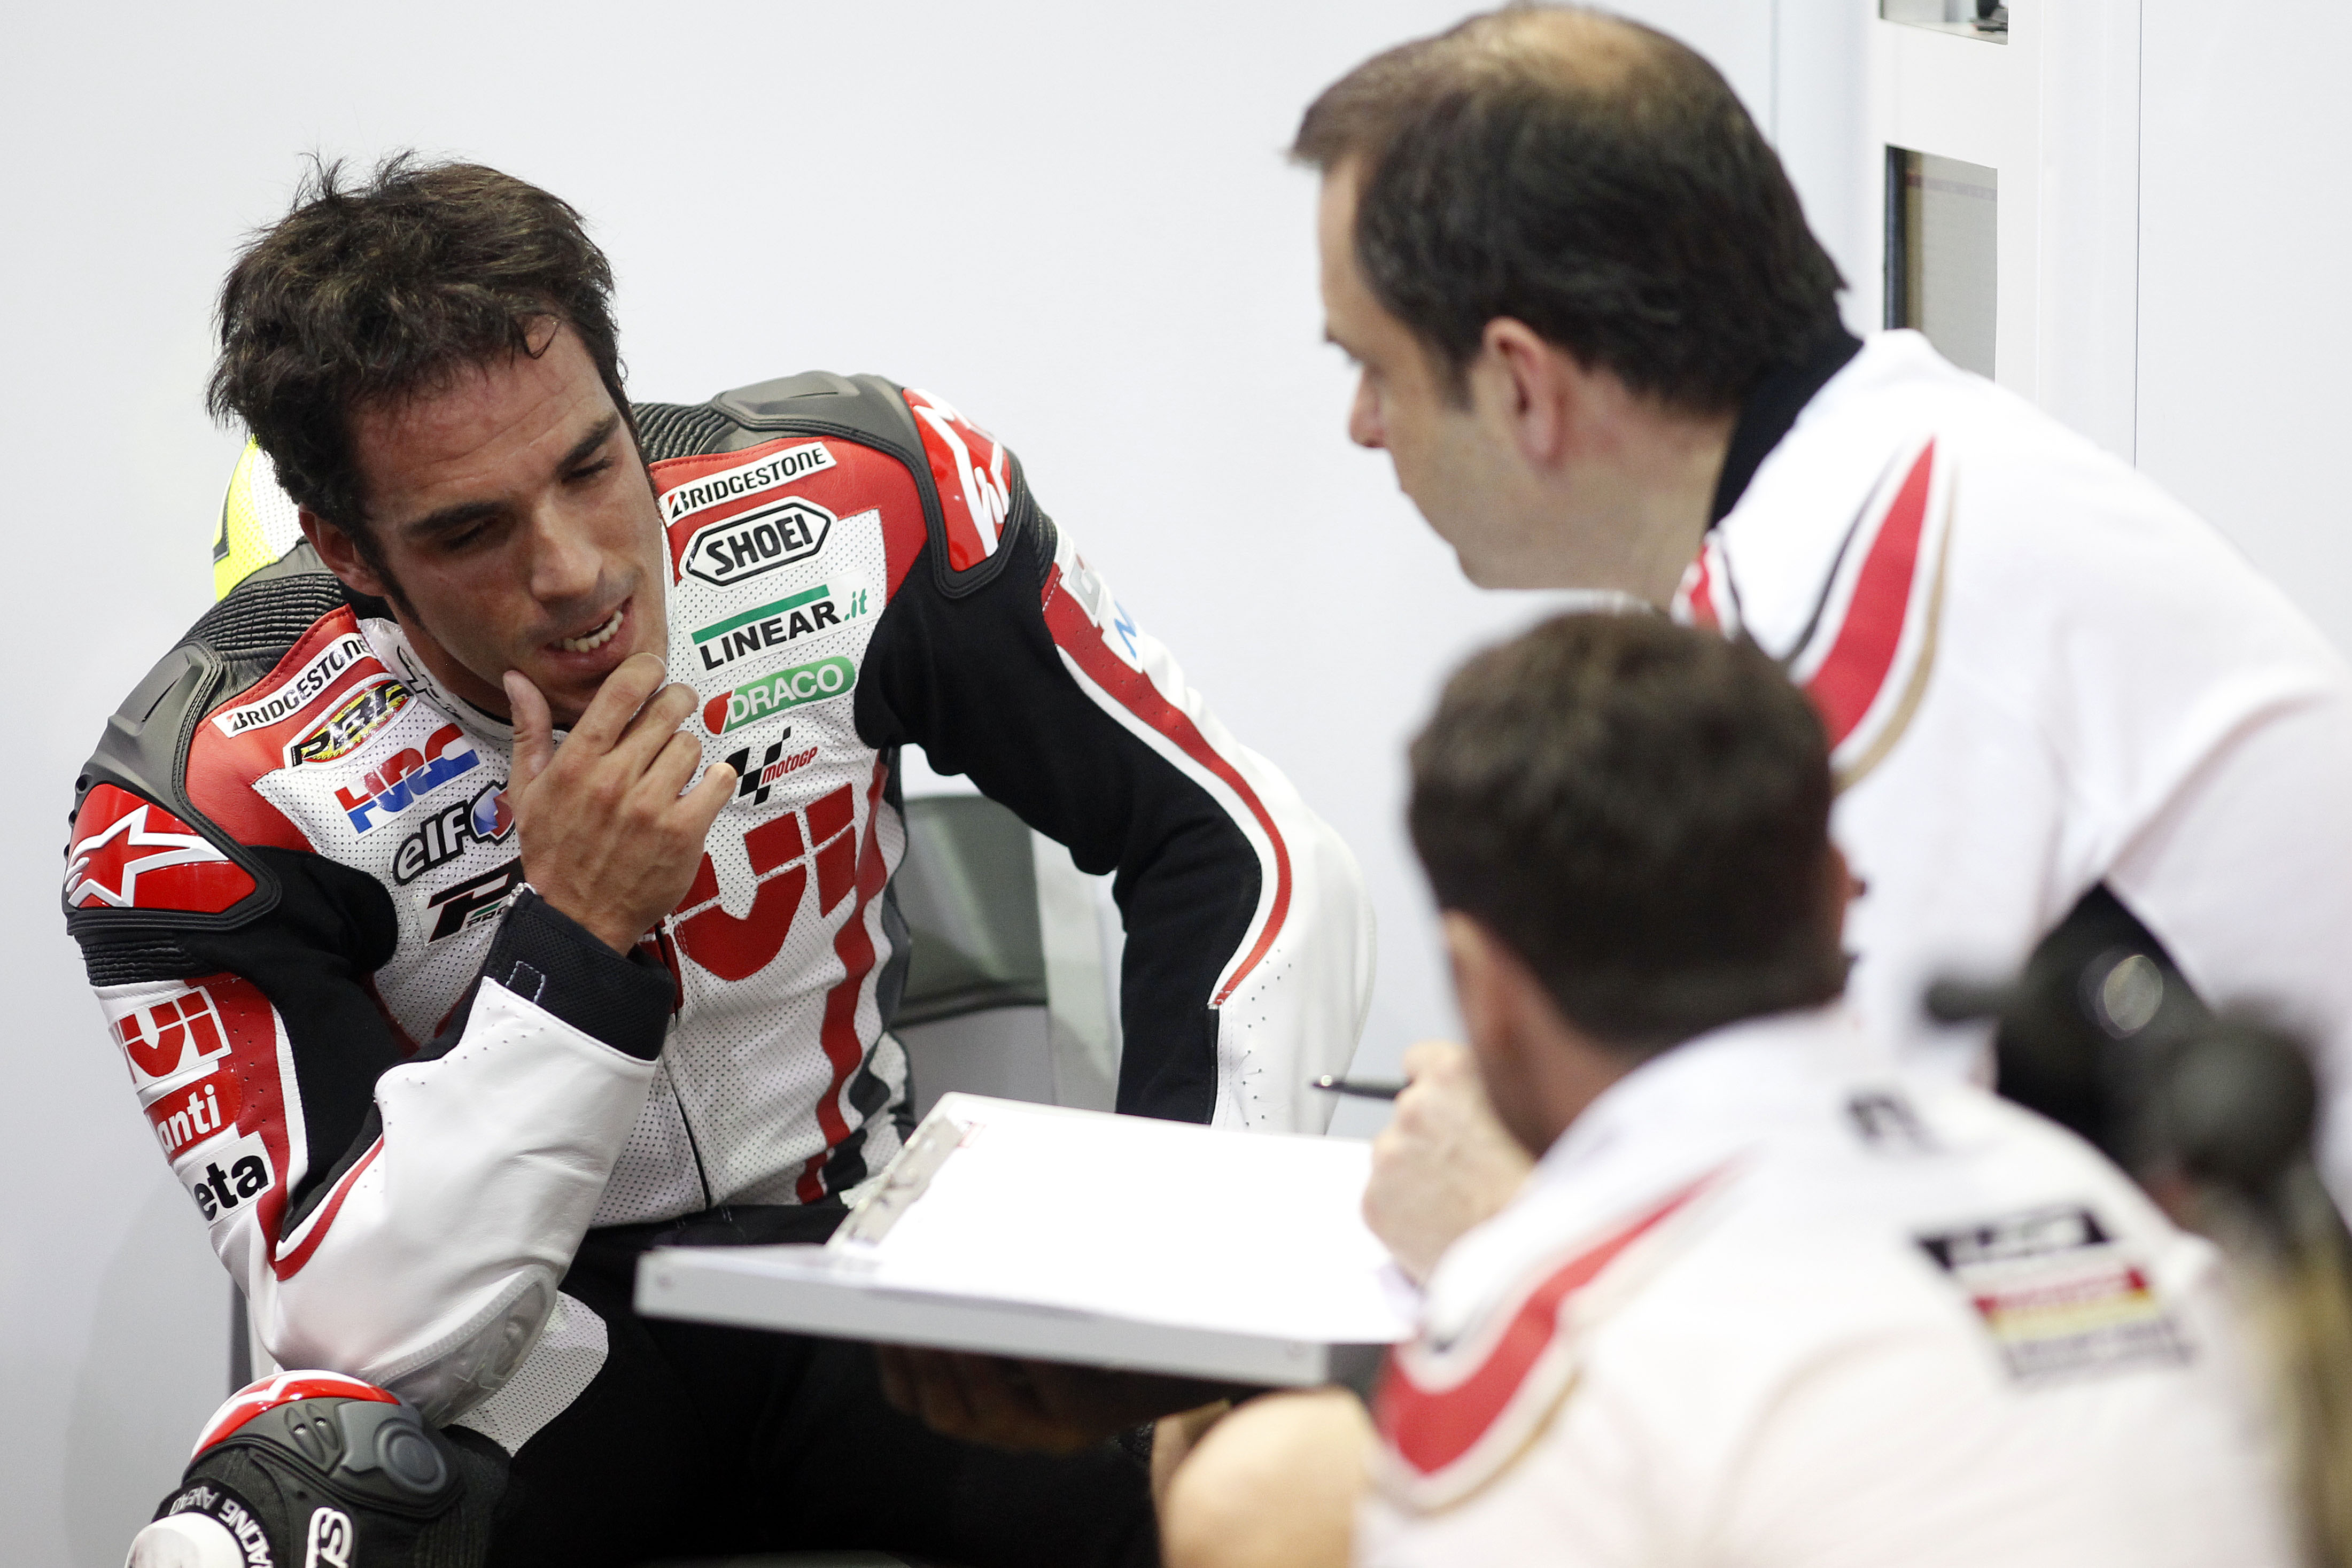 Toni Elías Compartirá Equipo Con Nico Terol En El Aspar Team De Moto2